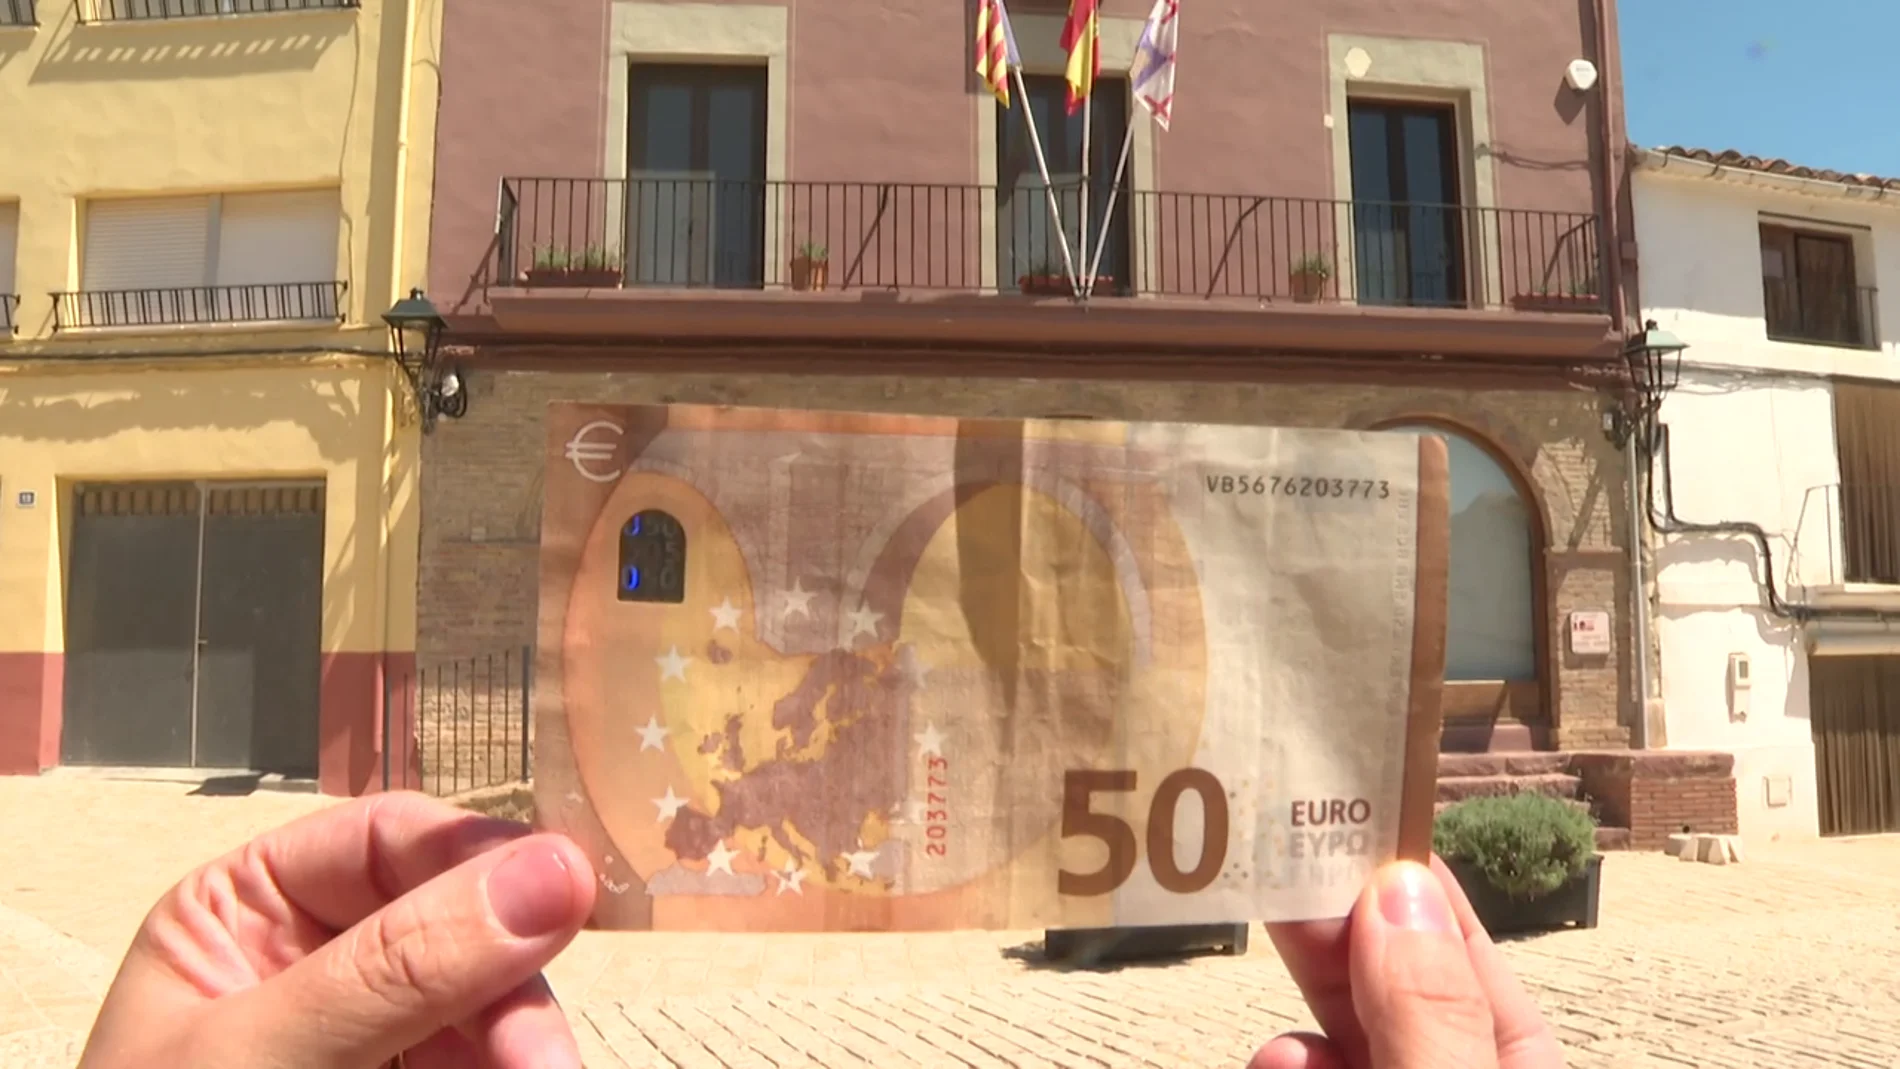 Se alquila un bar por 50 euros mensuales: la atractiva oferta que hace el ayuntamiento de un pueblo de Valencia 